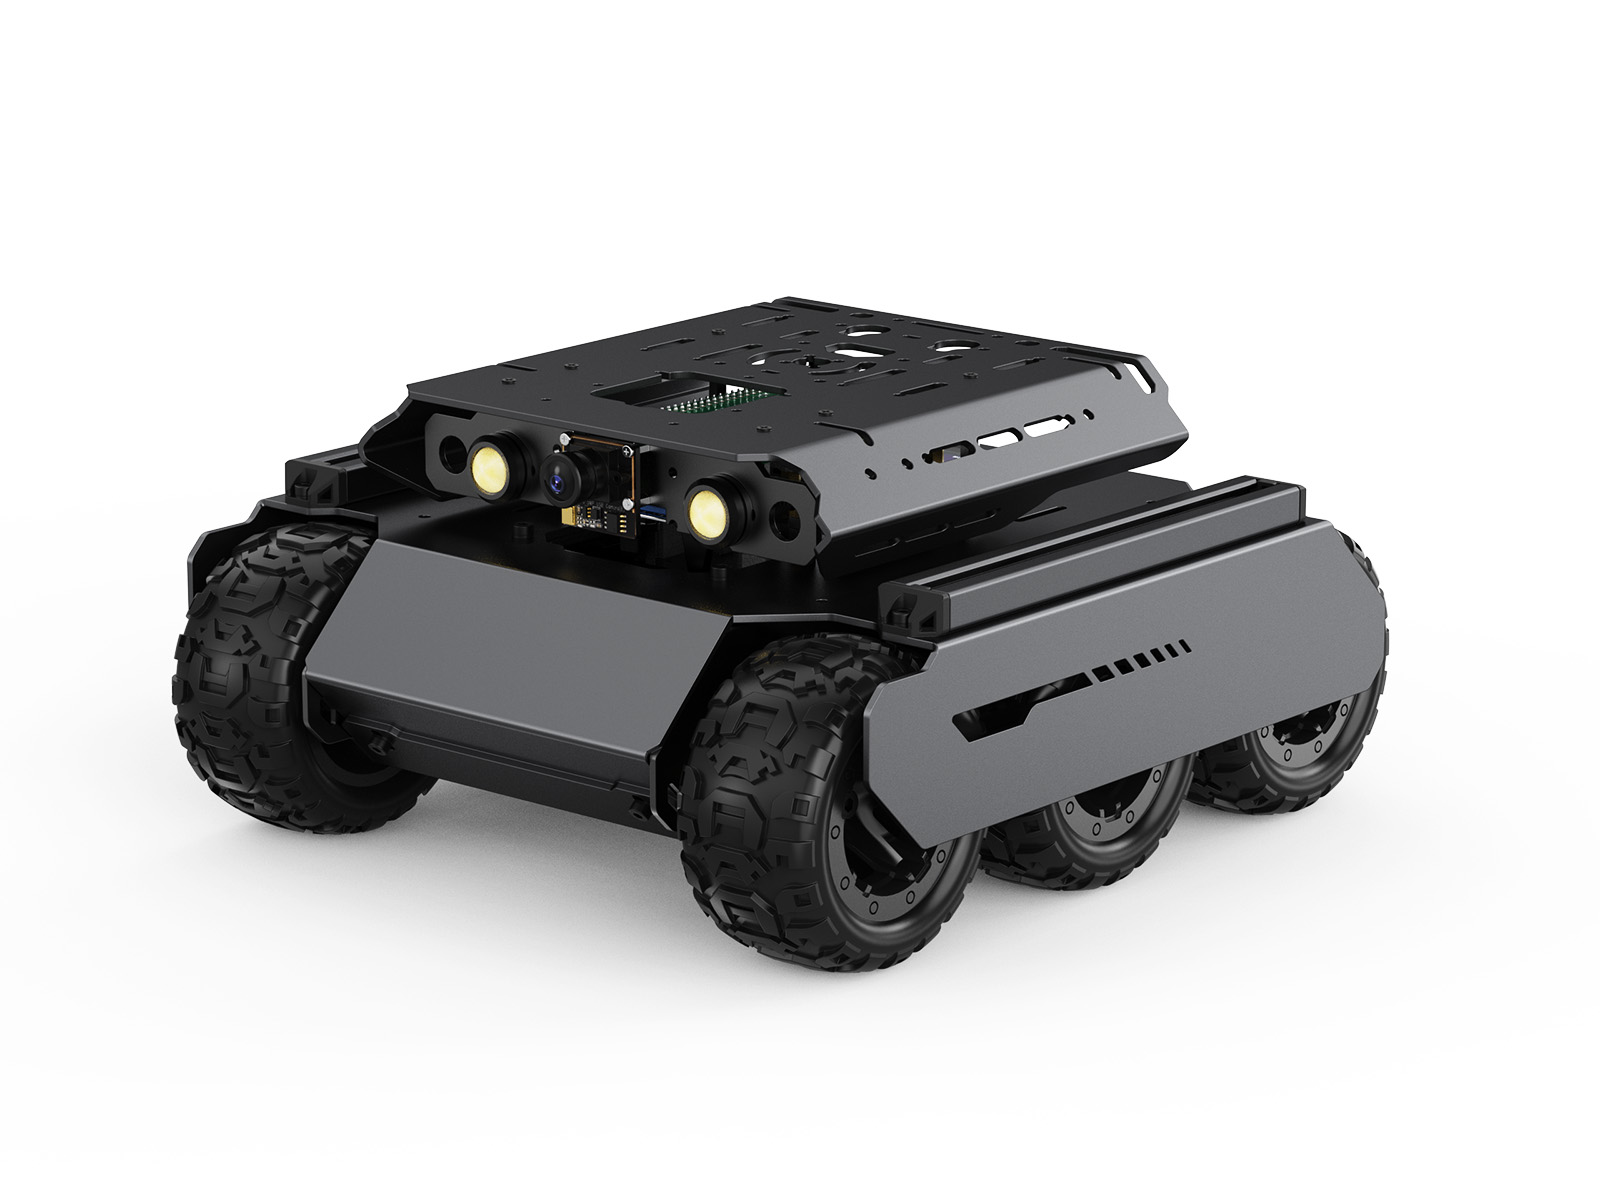 UGV Rover四驱六轮开源移动机器人 双脑架构 机器视觉 交互式教程 高性能灵活可扩展 金属架构 含树莓派4B 不含云台